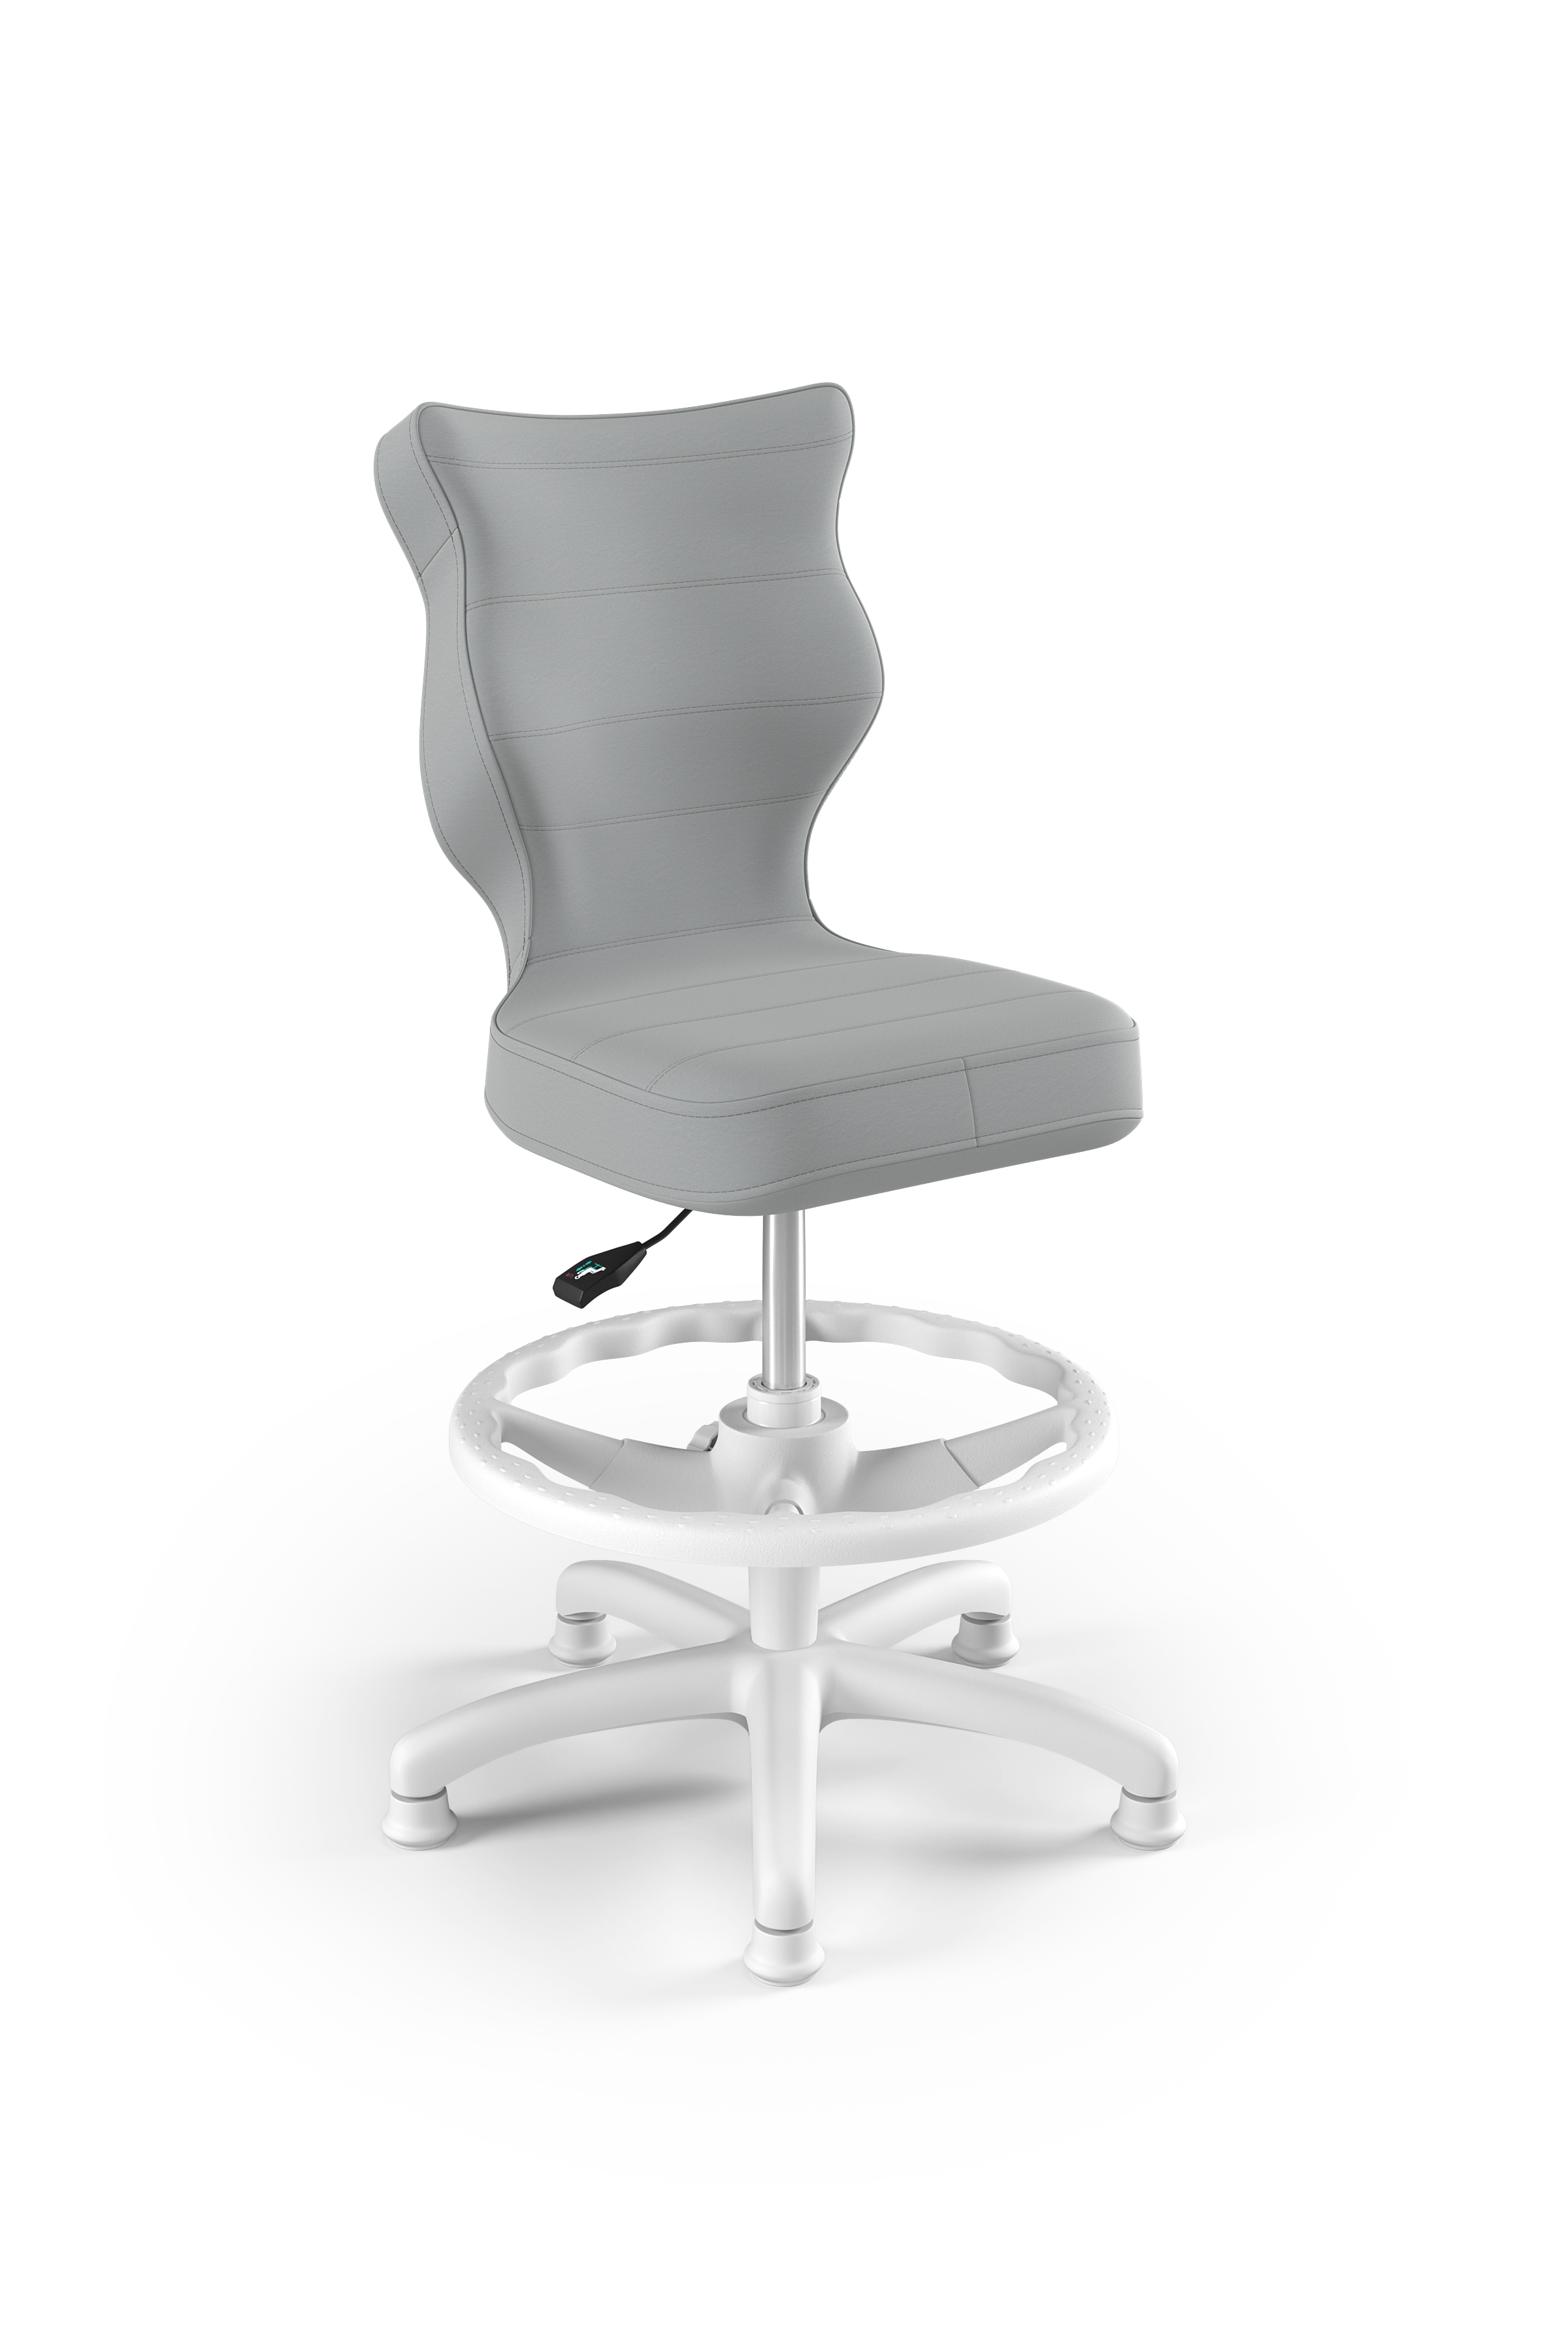 Krzesło dziecięce Petit Biały Velvet 03 rozmiar 3 WK+P